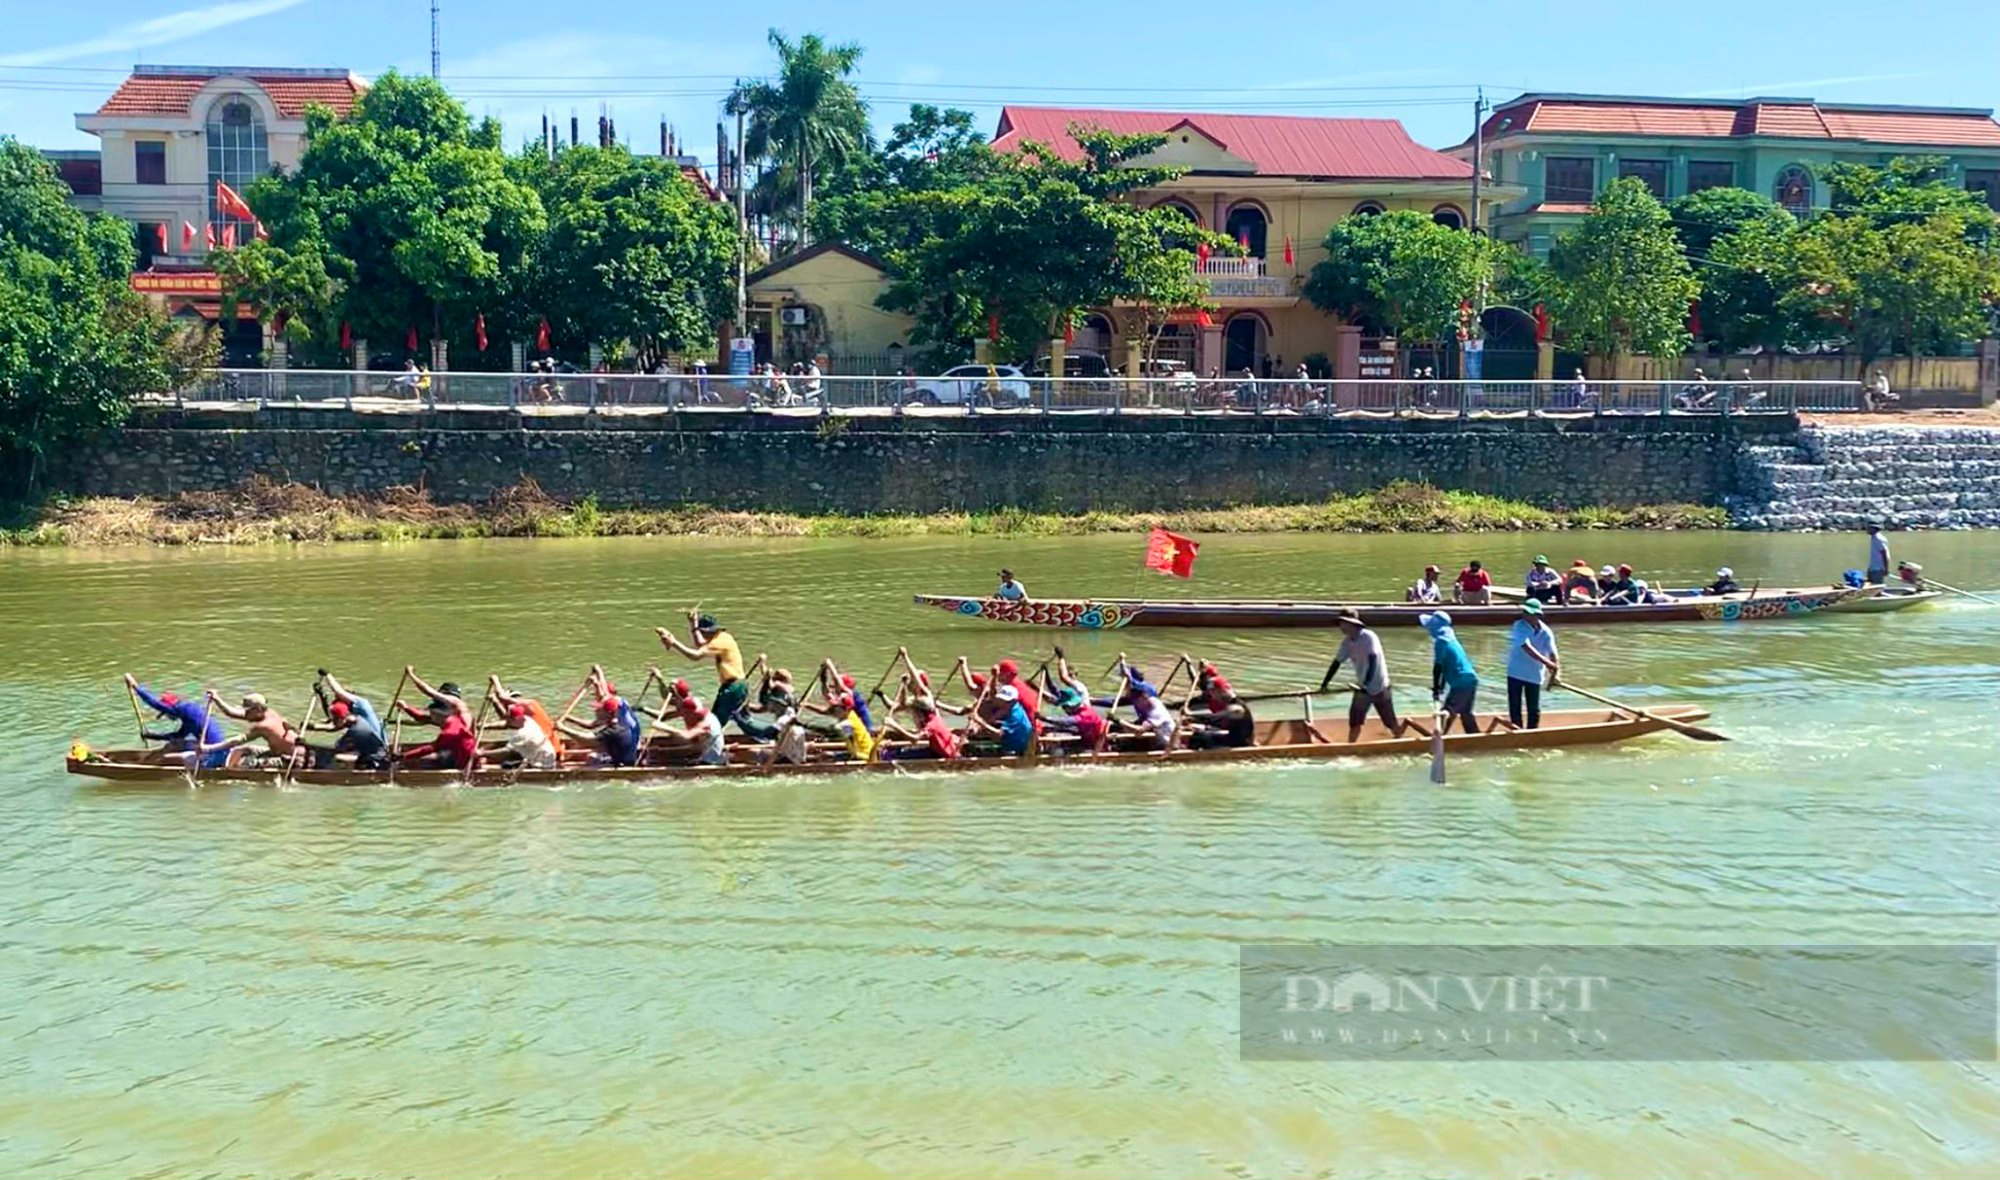 Về Quảng Bình xem lễ hội đua thuyền truyền thống trên quê hương Đại tướng vào ngày Quốc Khánh 2/9 - Ảnh 2.